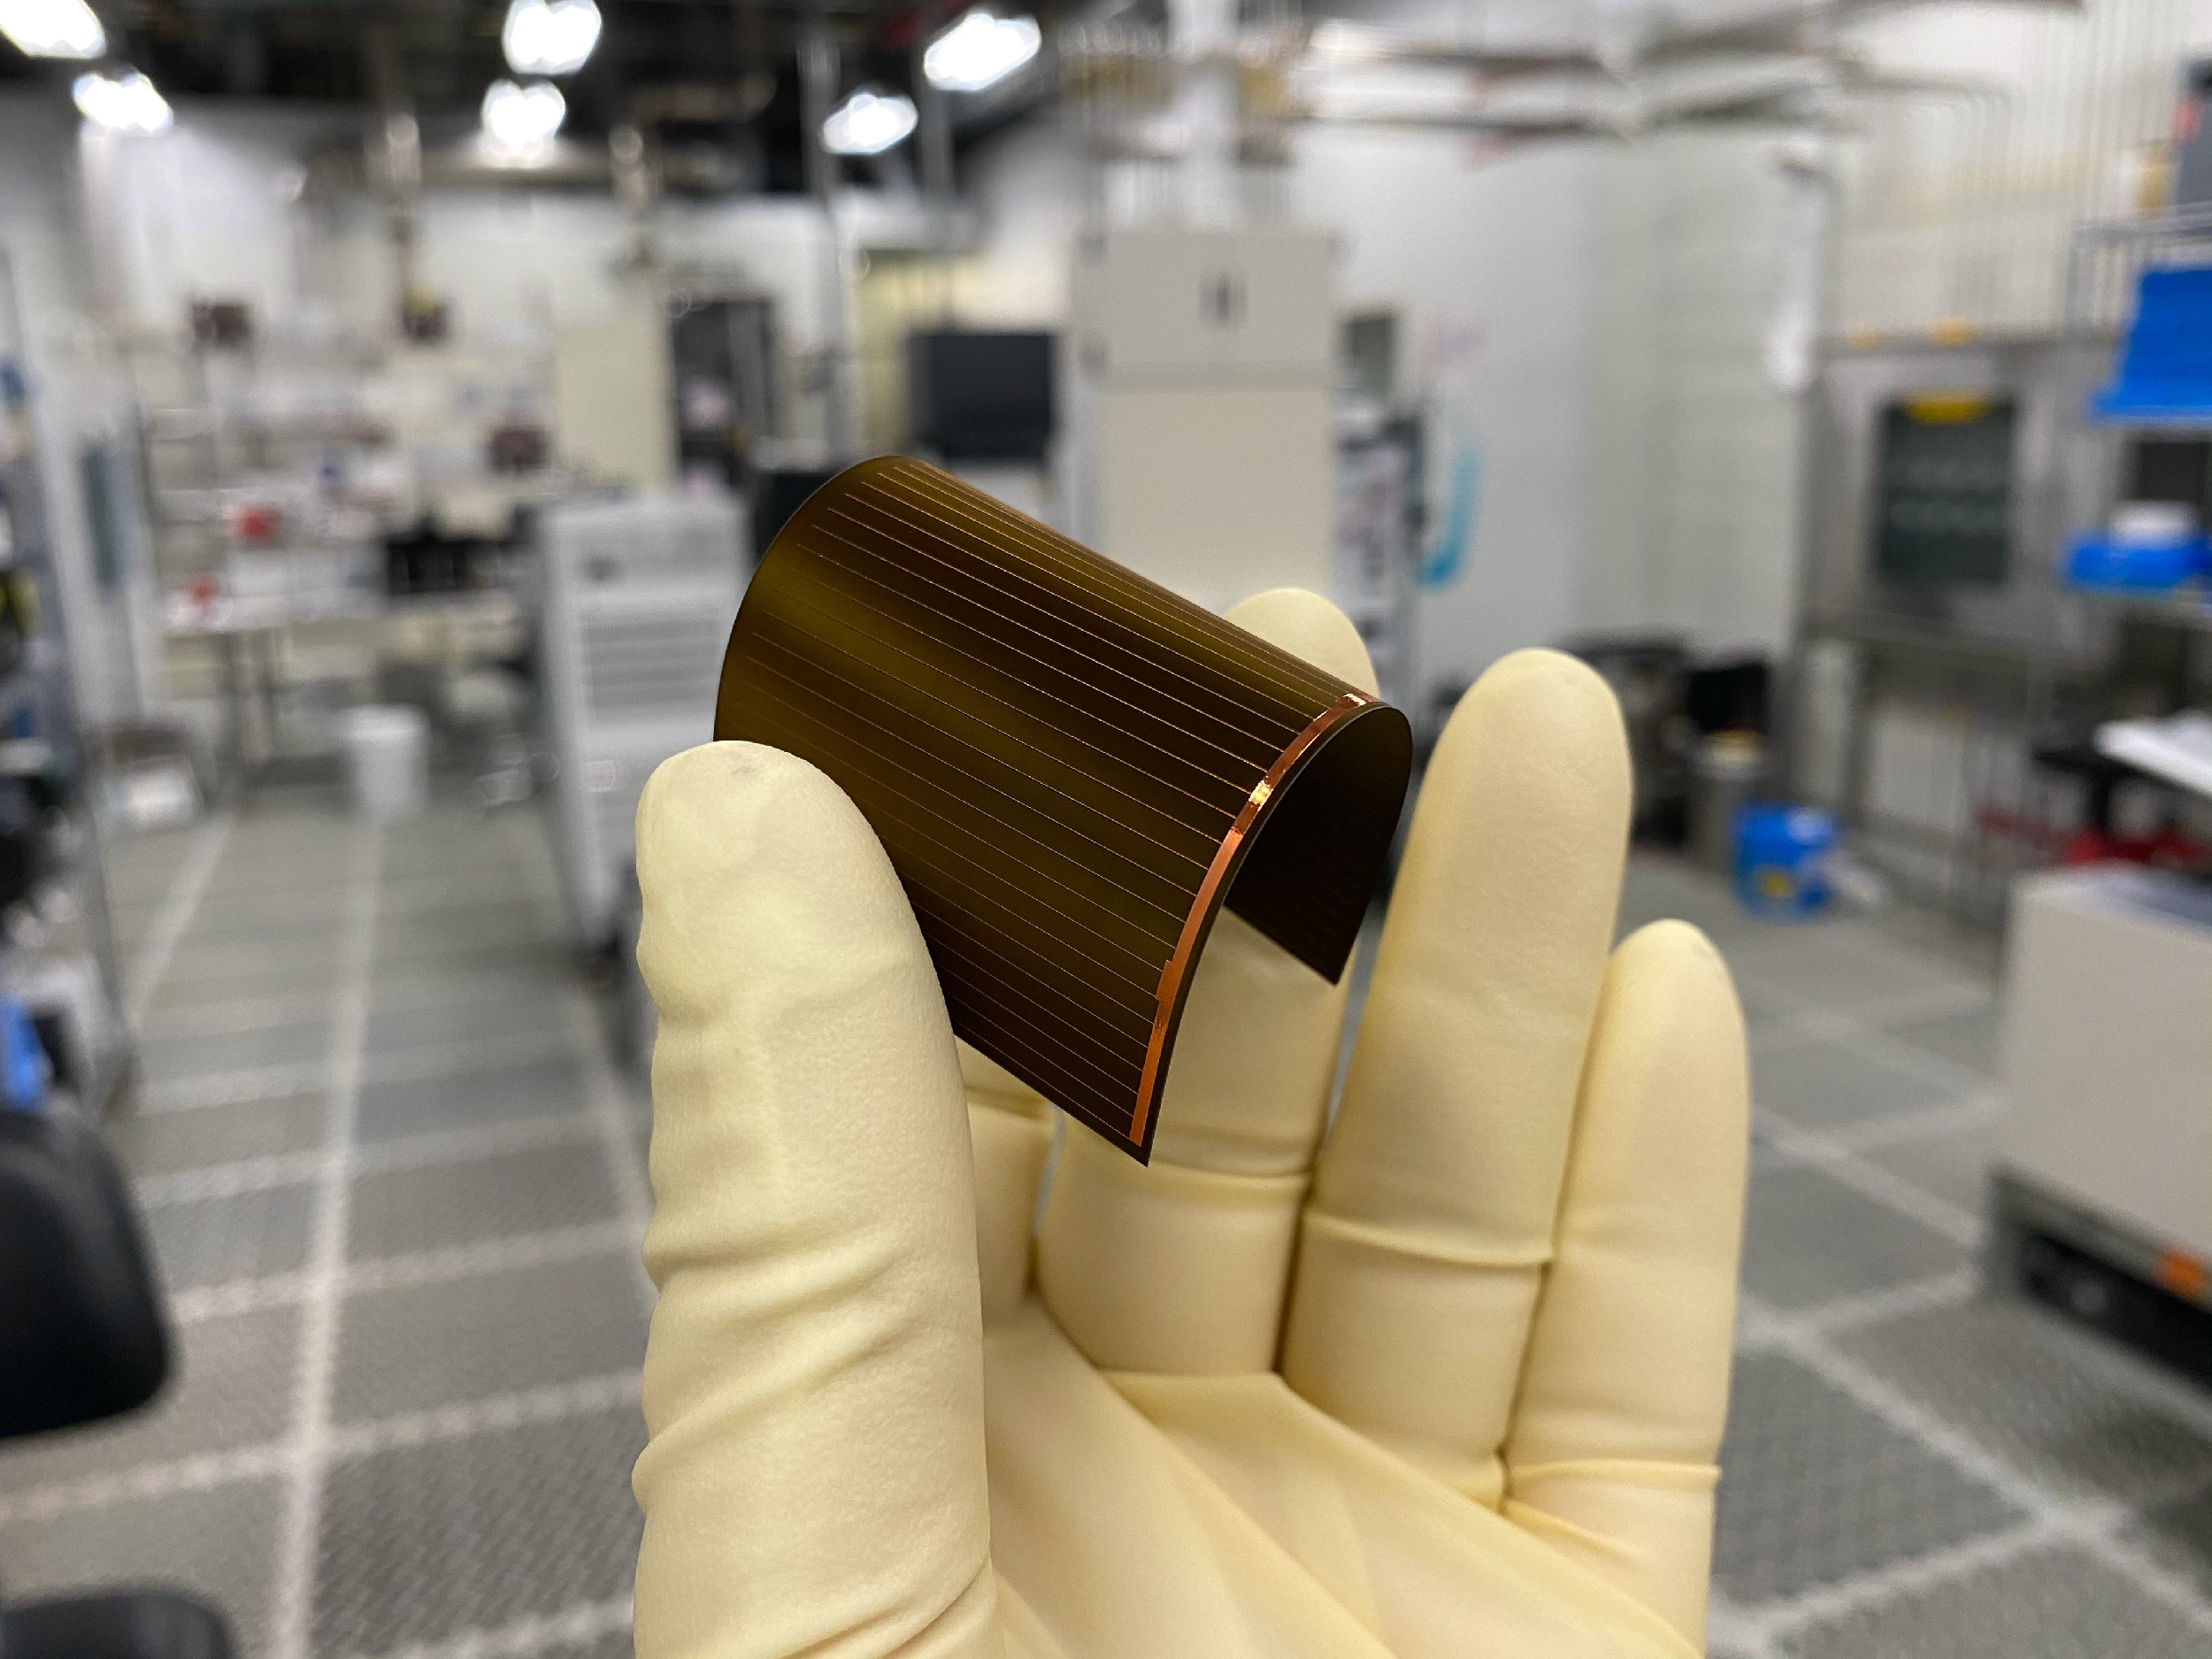 یک سلول خورشیدی سیلیکونی انعطاف پذیر Regher ساخته شده با بستر سیلیکون 20 میکرون.